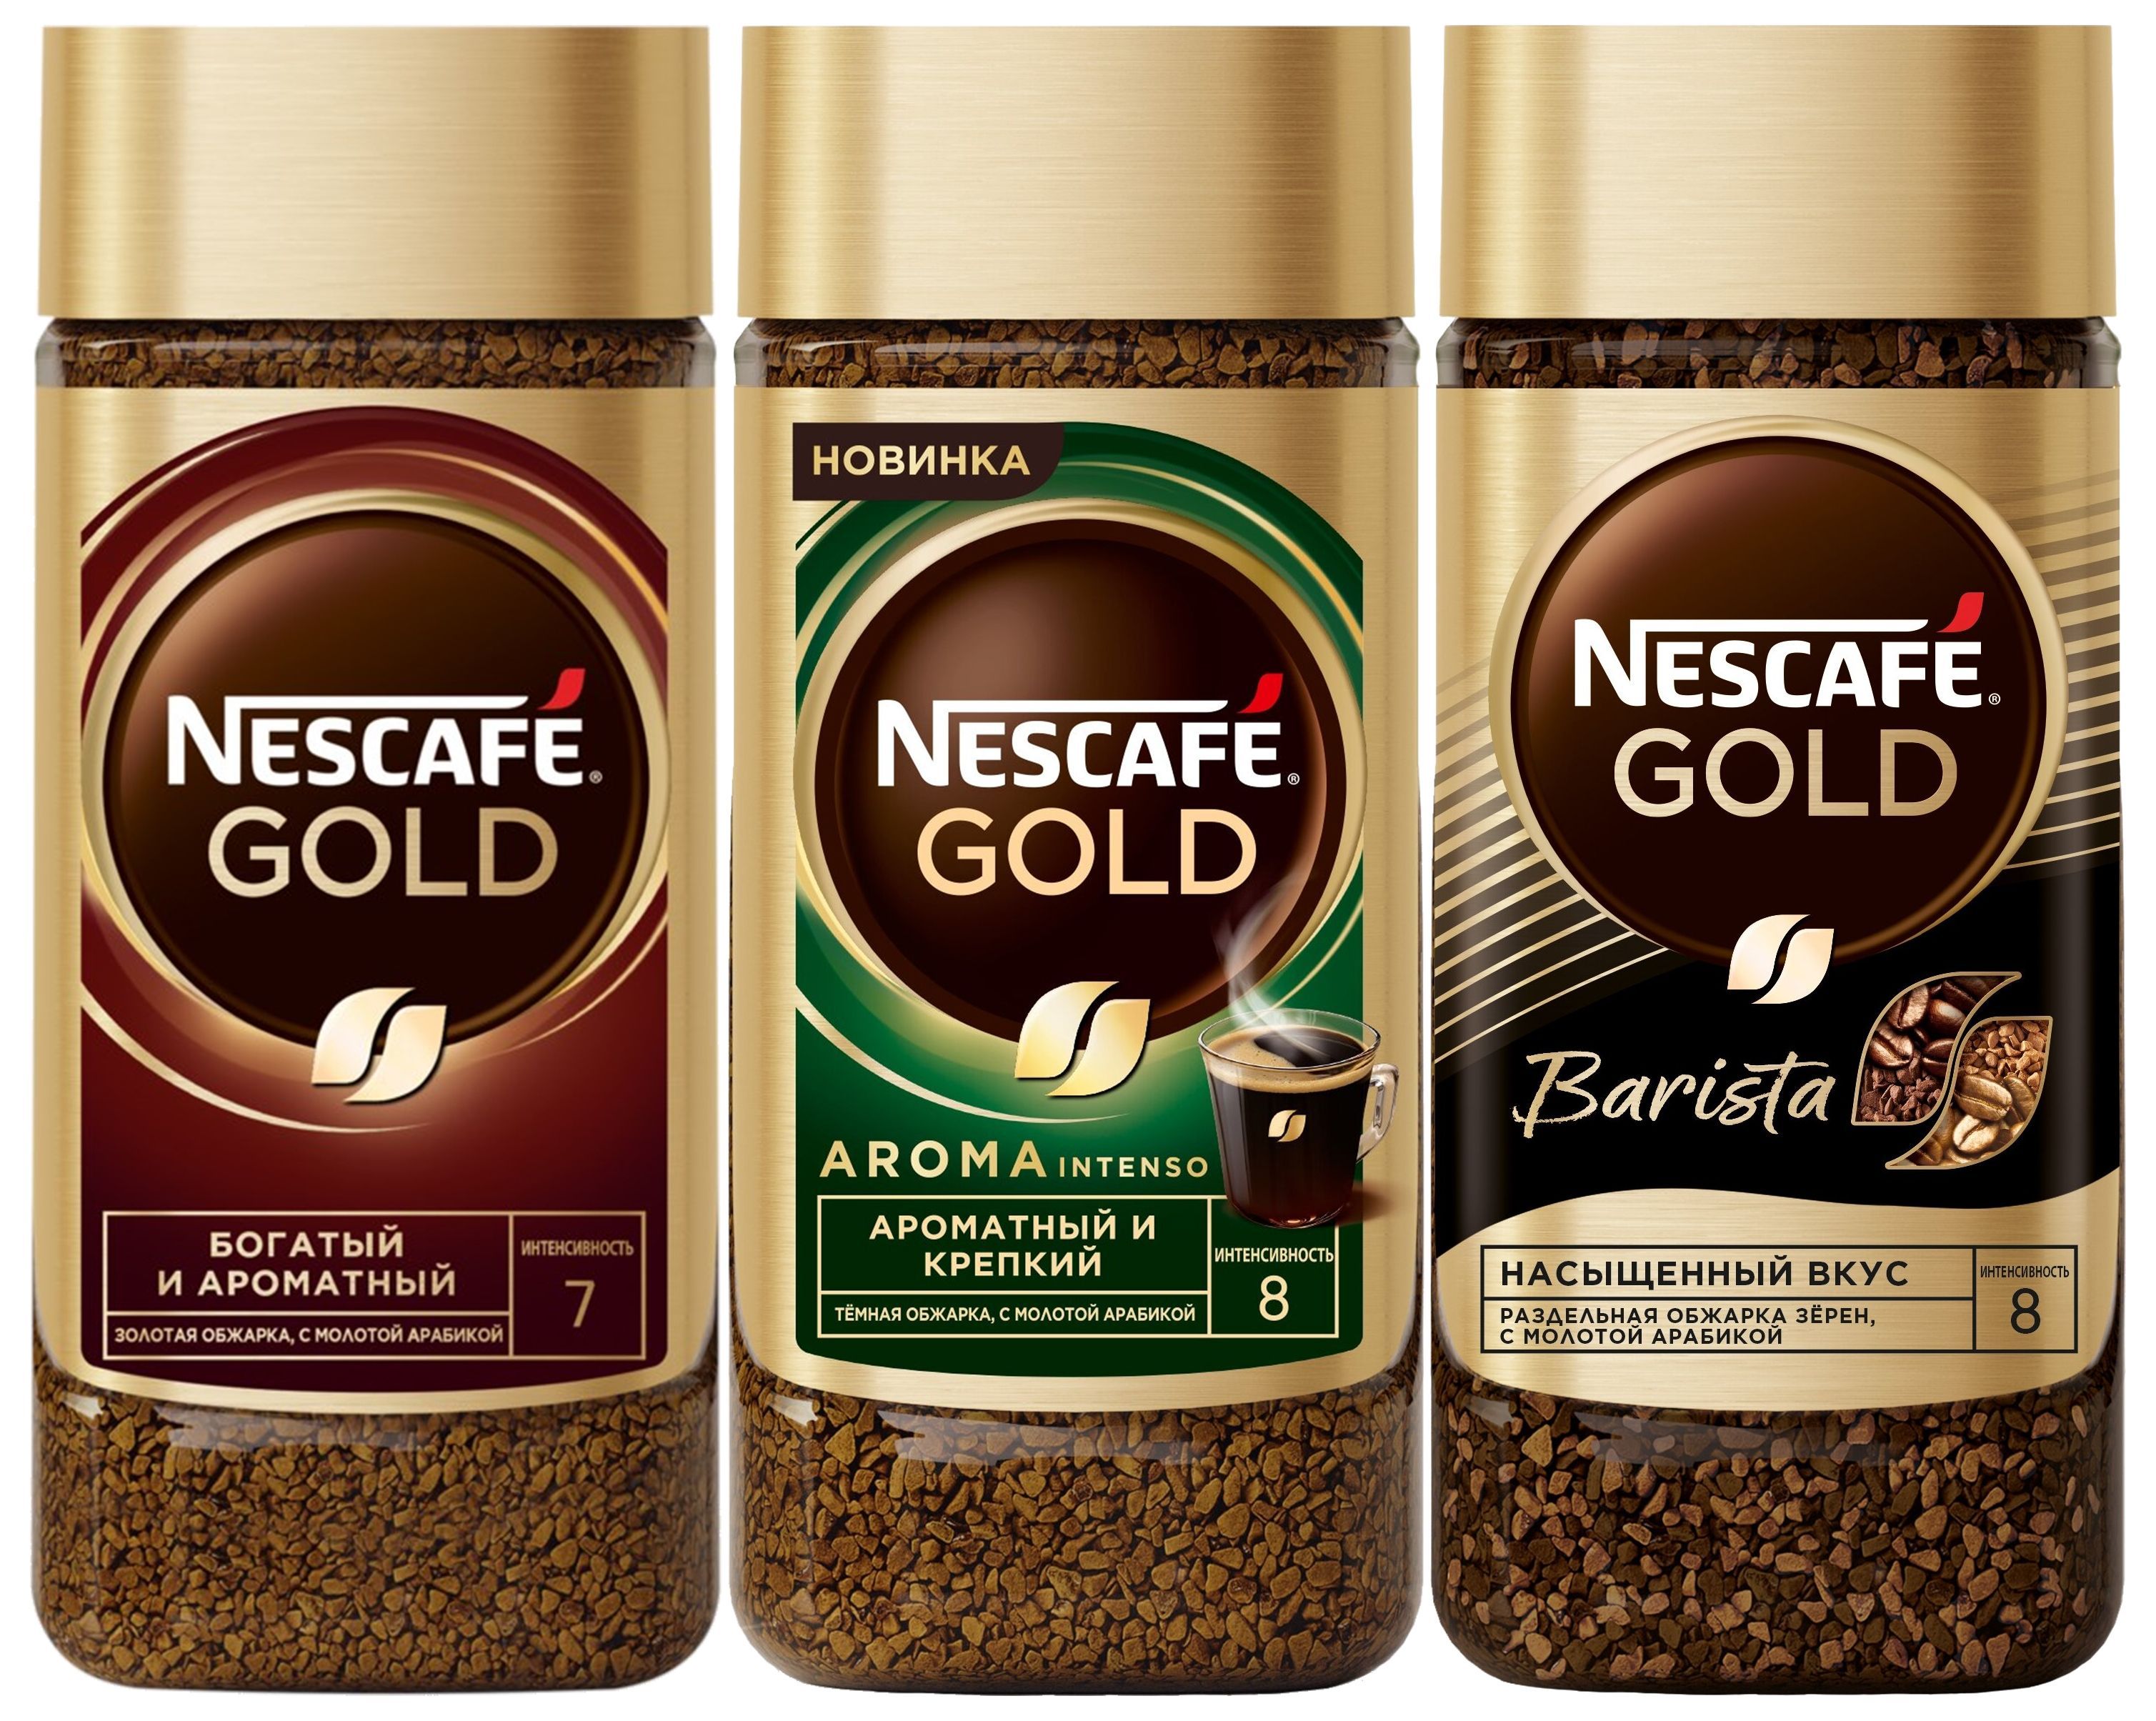 Nescafe gold aroma intenso. Приготовление растворимый кофе.